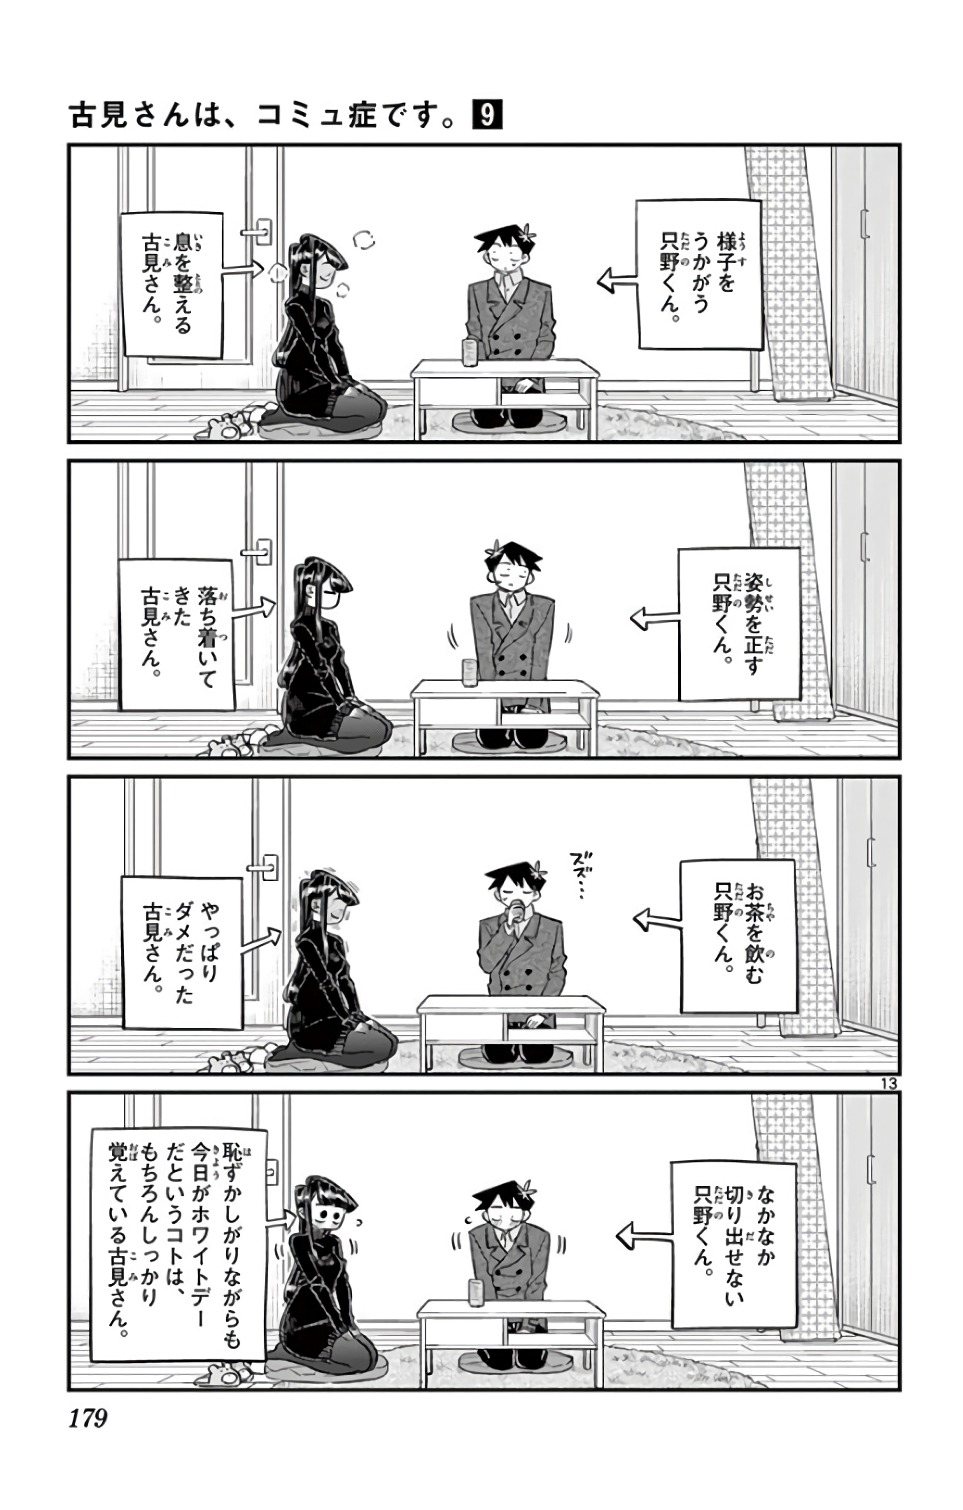 Komi-san wa, Comyushou desu. 古見さんは、コミュ症です。